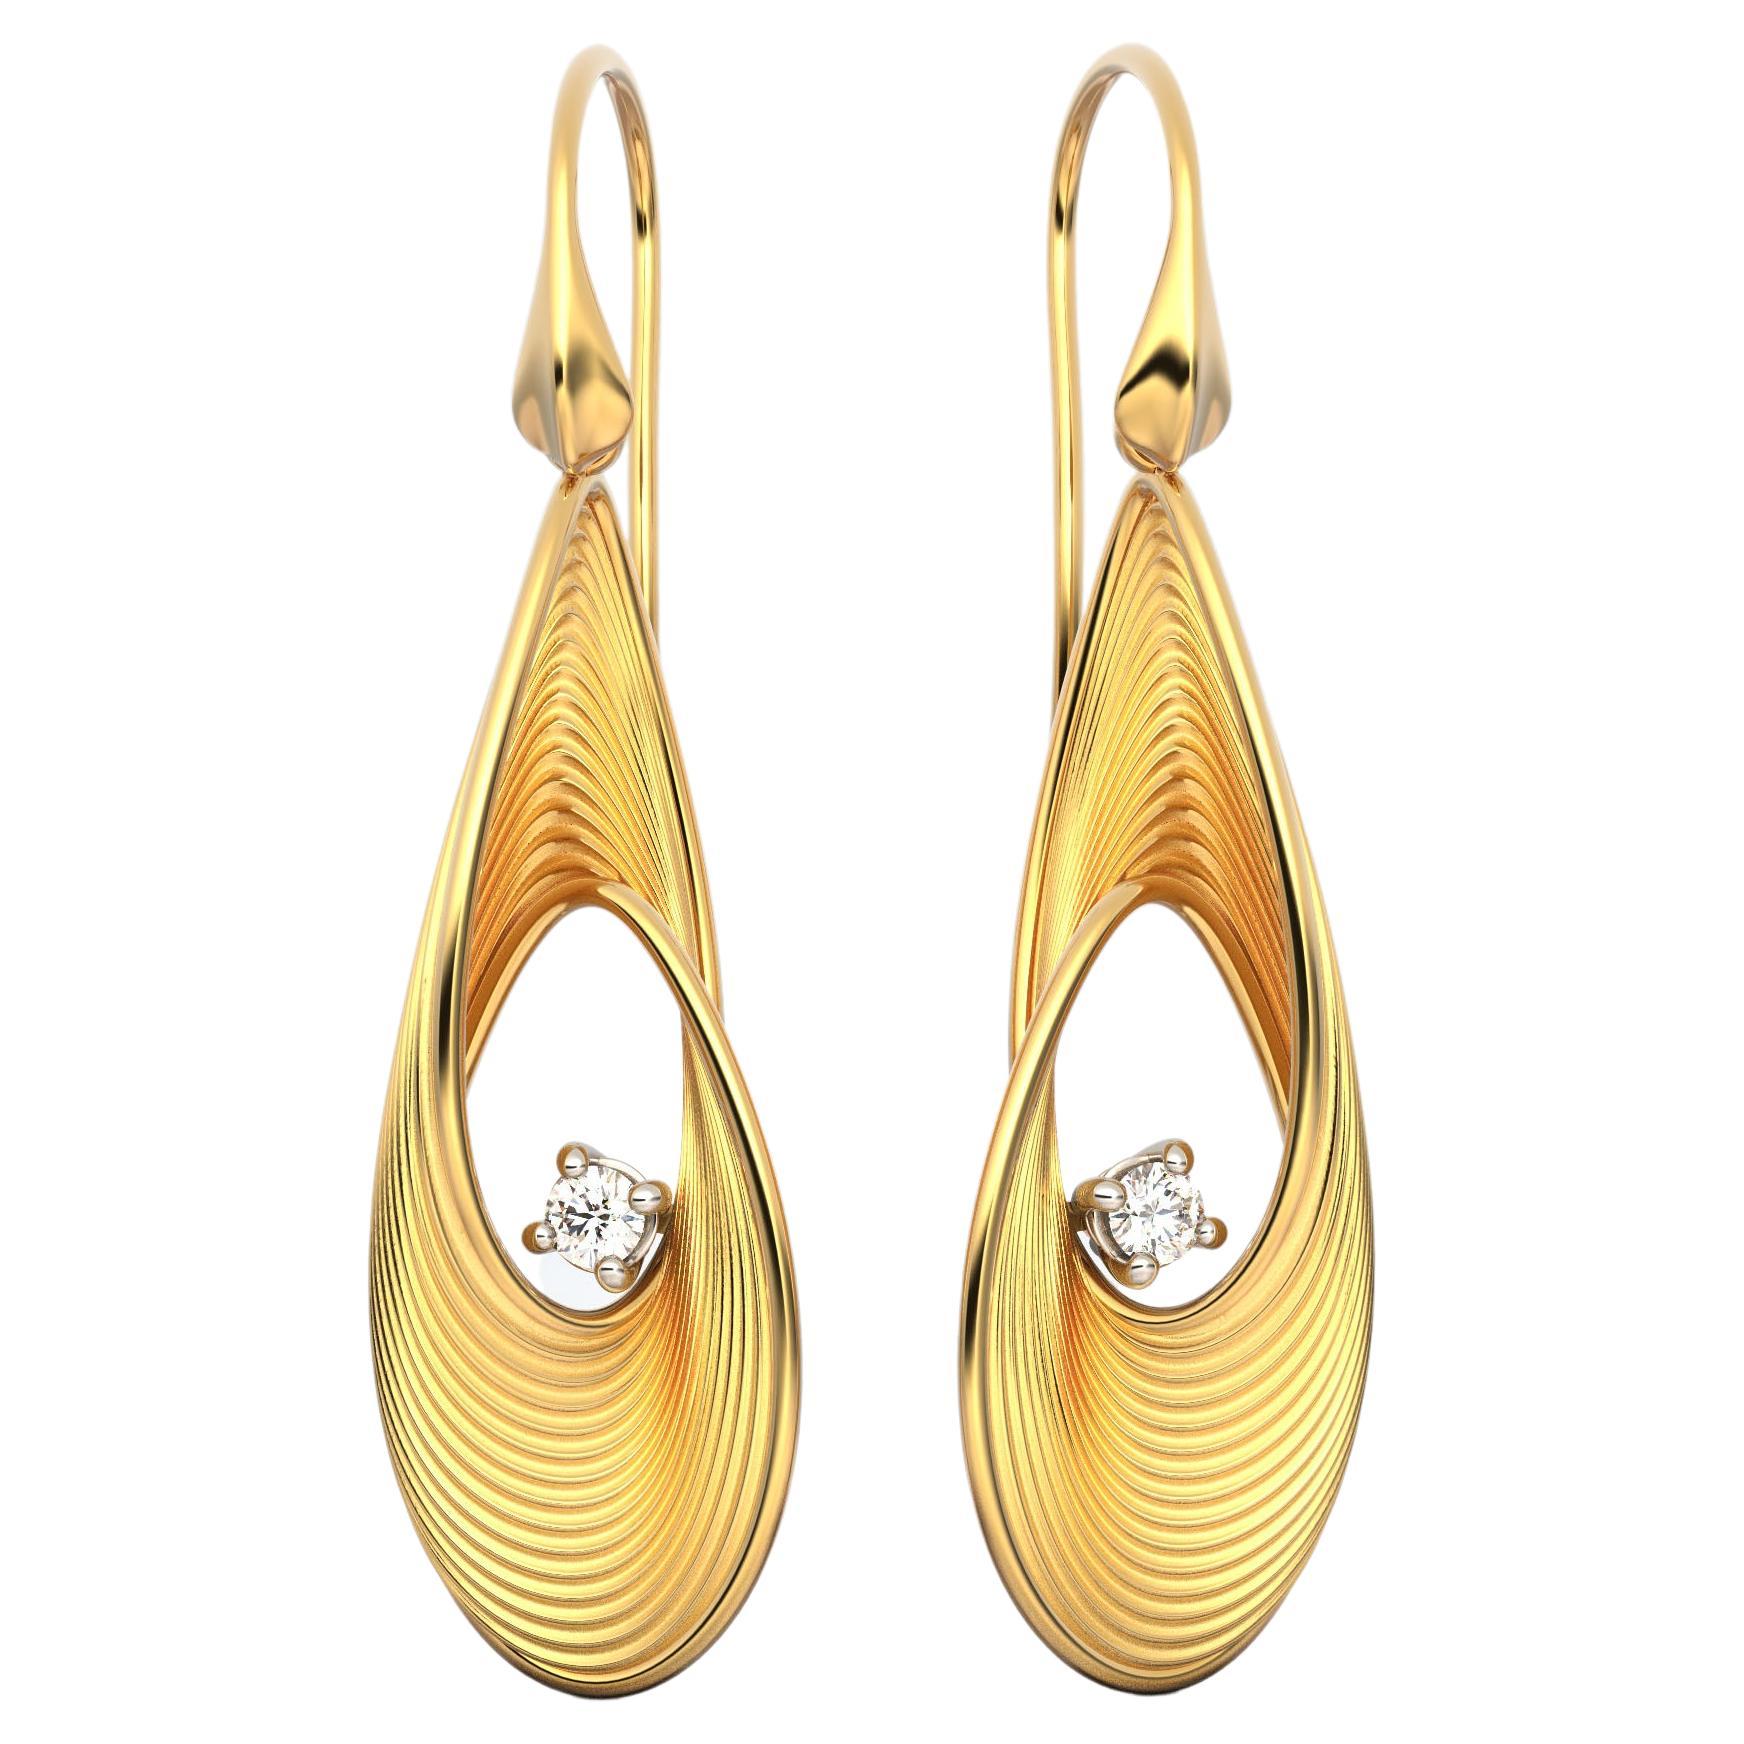 Oltremare Gioielli Diamond Earrings, Dangle Drop Earrings in 18k Solid Gold For Sale